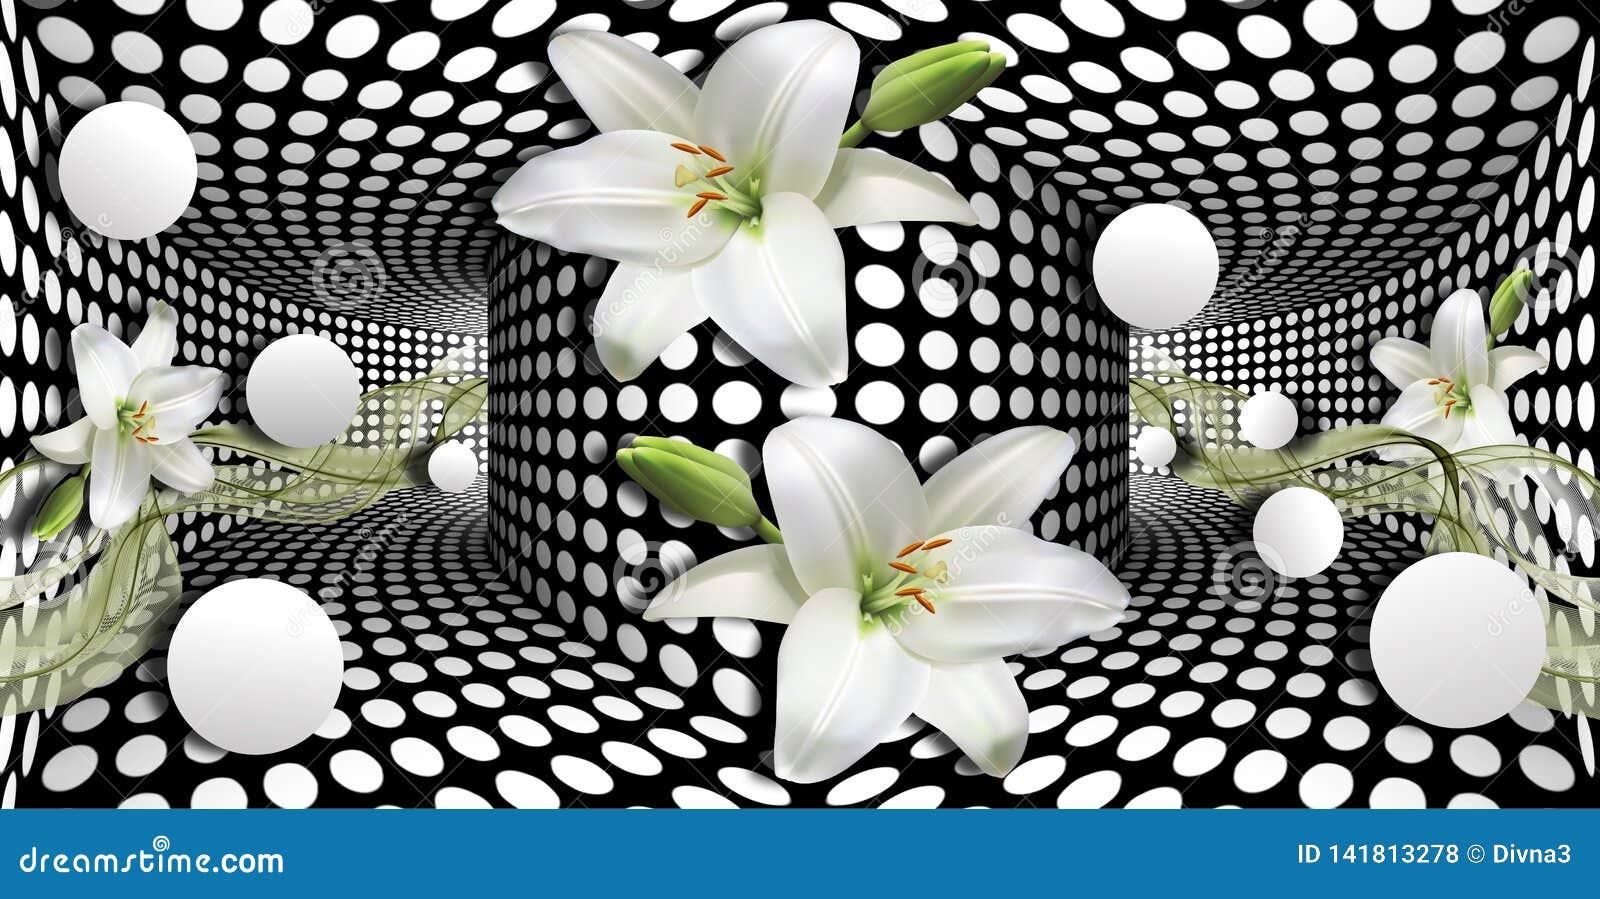 Hãy dành một chút thời gian để tải hình nền 3D với hoa lan trắng và quả cầu trên hiệu ứng quang học để tận hưởng không gian sống động và mộc mạc cho máy tính của bạn. Với vẻ đẹp đơn giản và tinh tế, hình nền này sẽ khiến cho màn hình máy tính của bạn trở nên đẹp hơn.